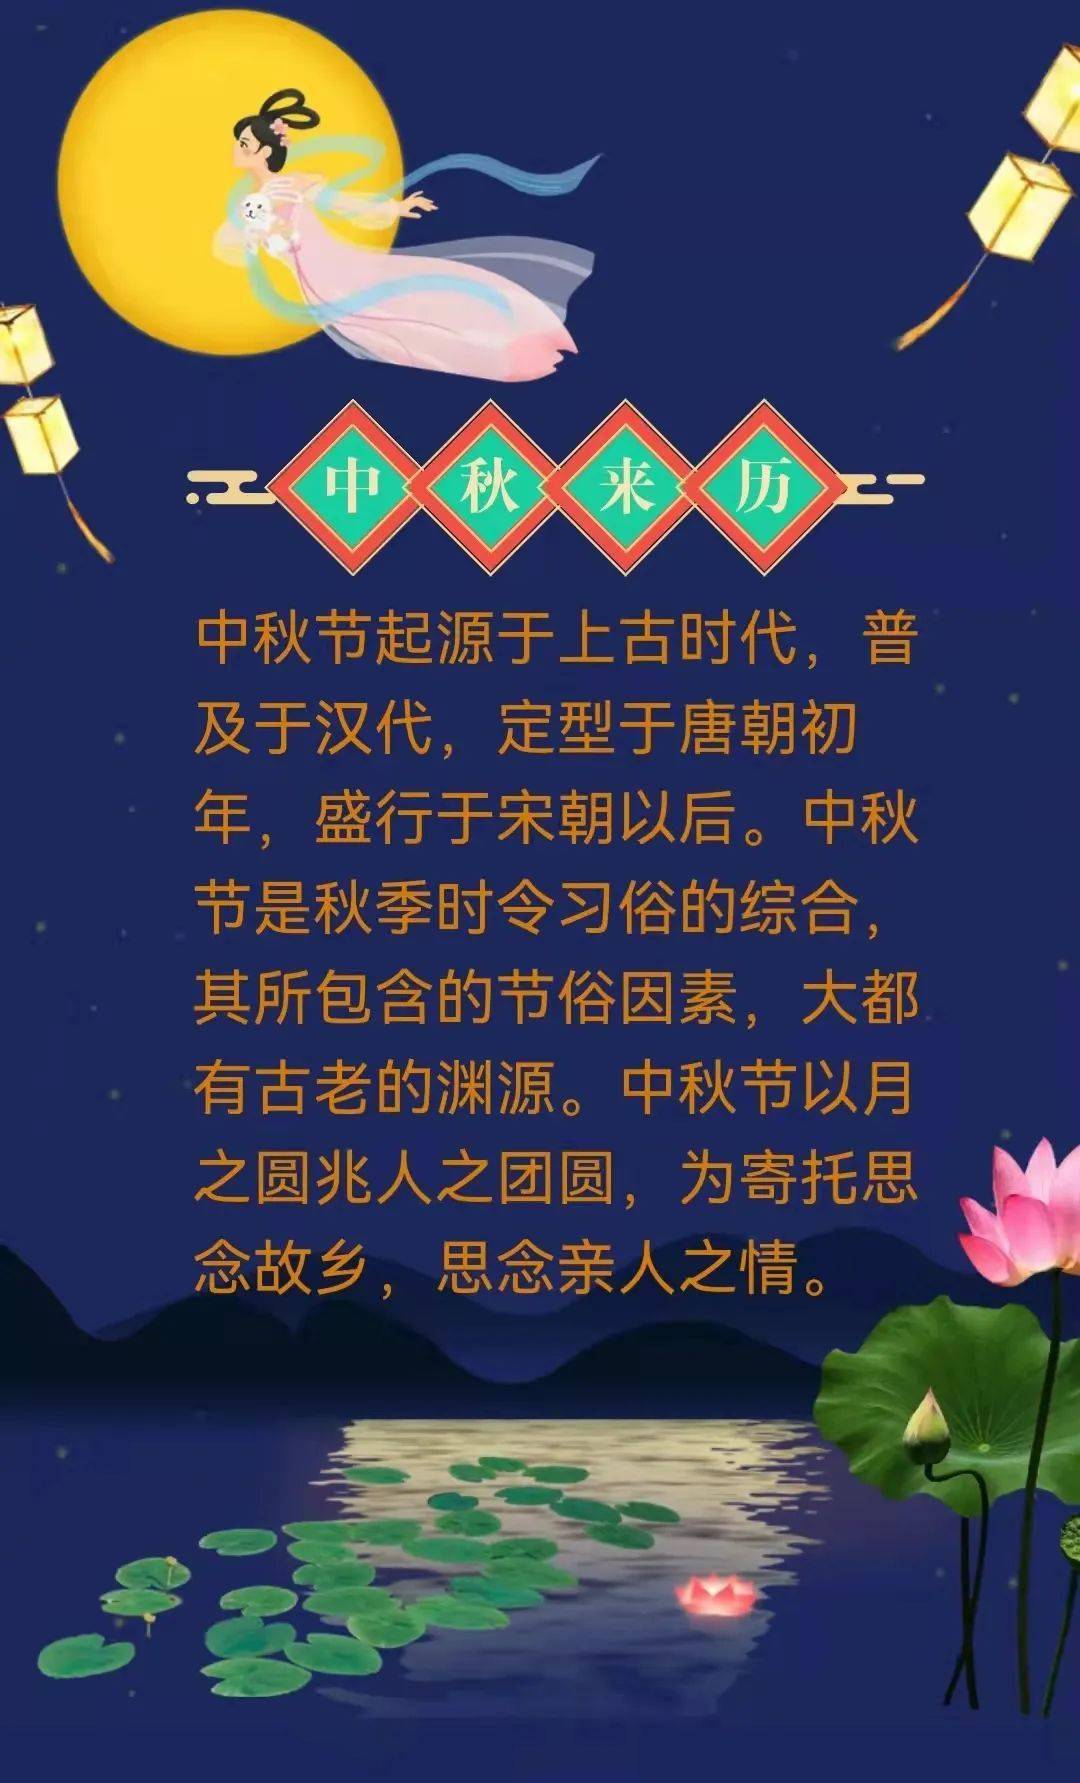 中国传统节日顺序表以及日期_中国传统节日按日期排序_中国传统节日顺序排列和日期